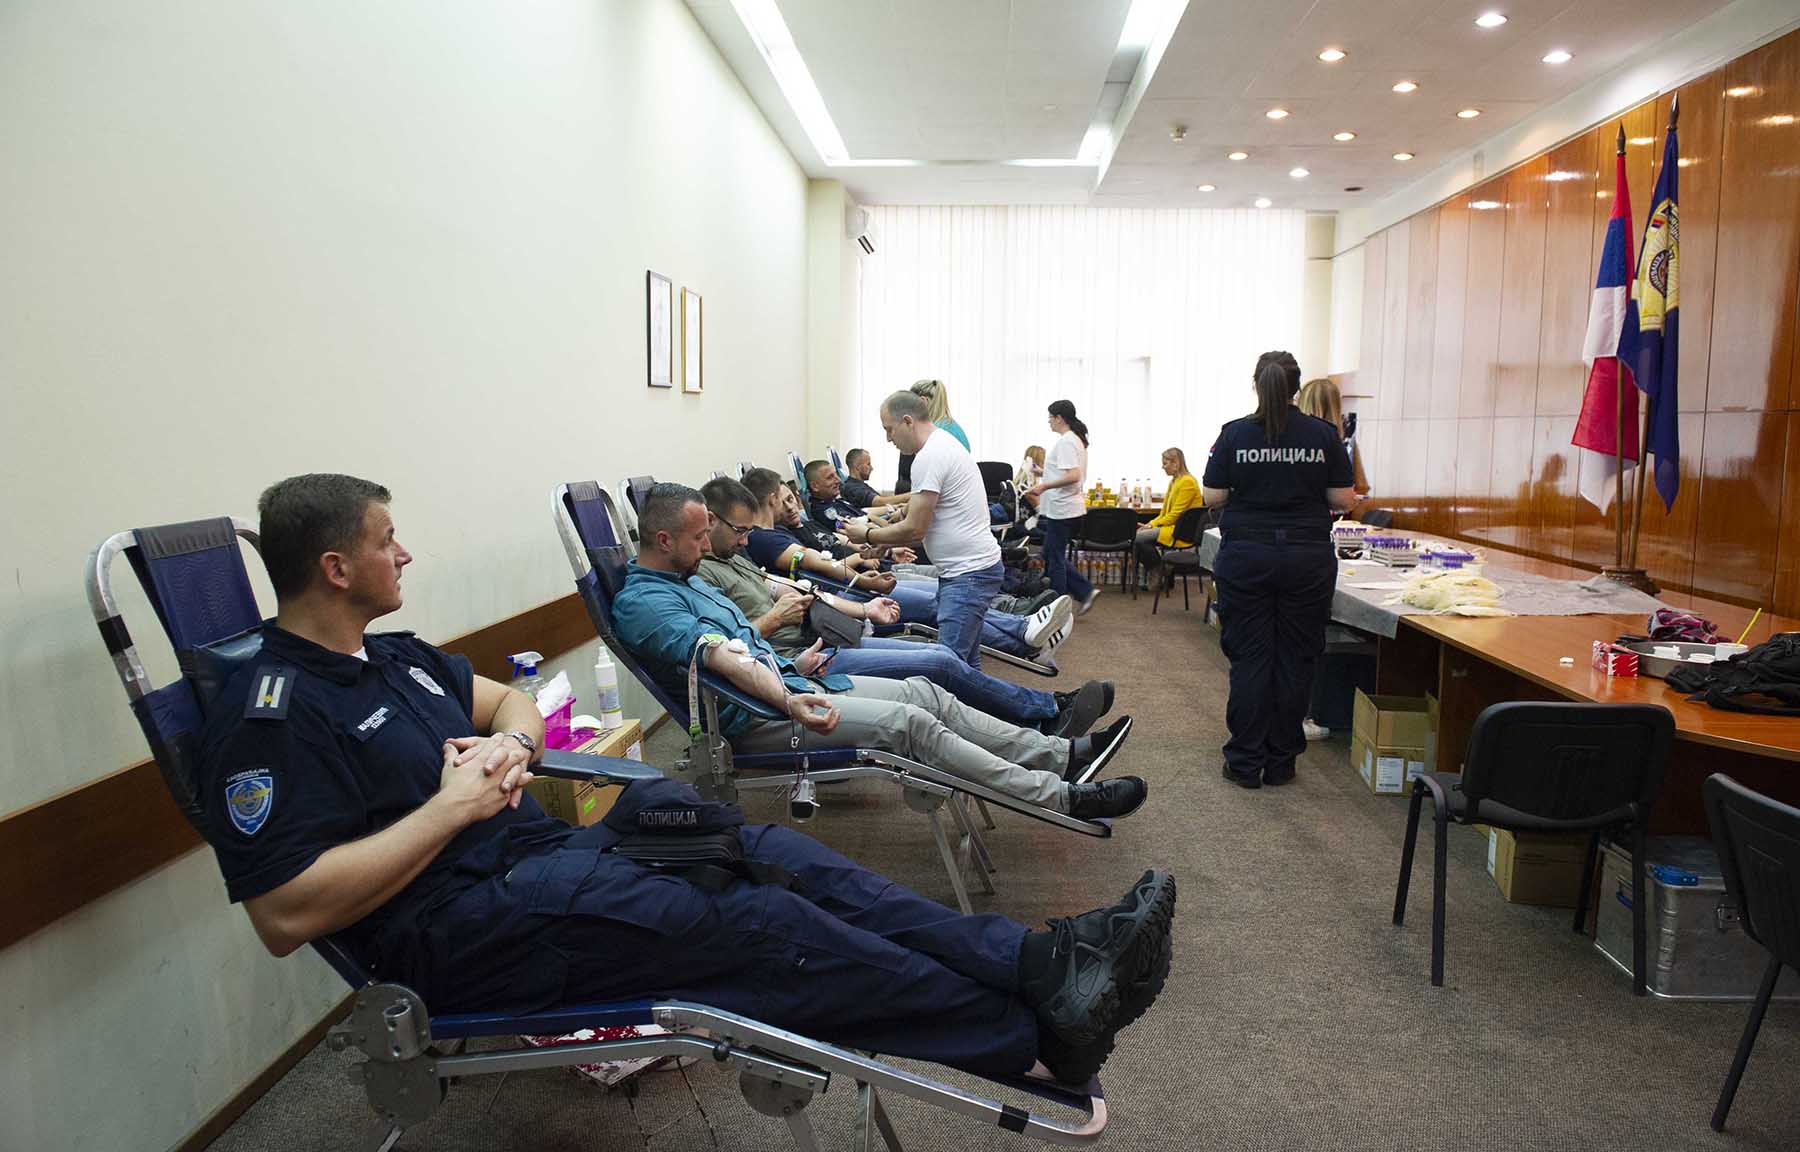 Velikim odzivom akciji dobrovolјnog davanja krvi pripadnici MUP-a još jednom pokazali da su veliki lјudi